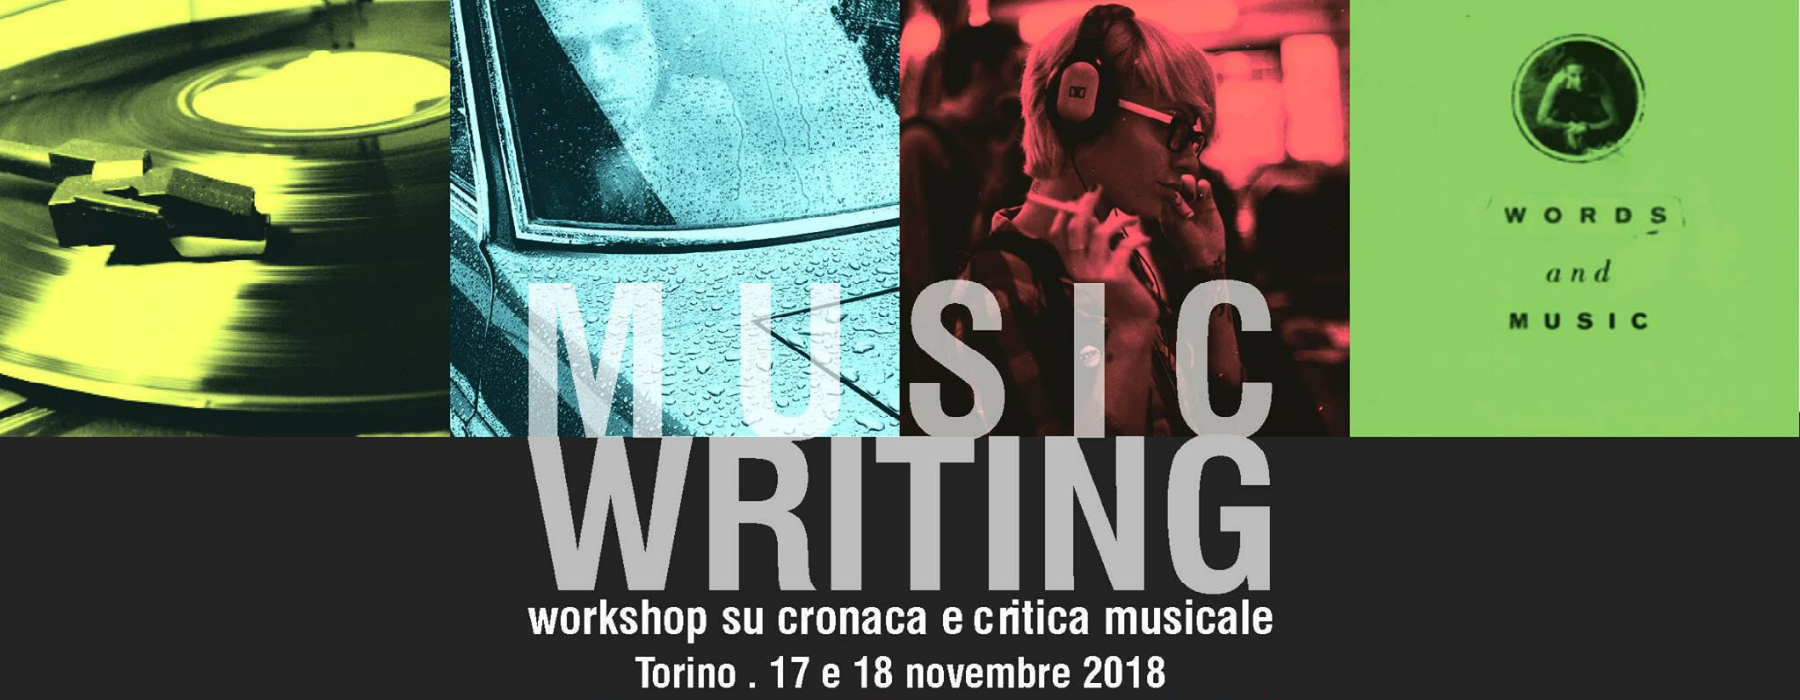 Locandina "Music writing"